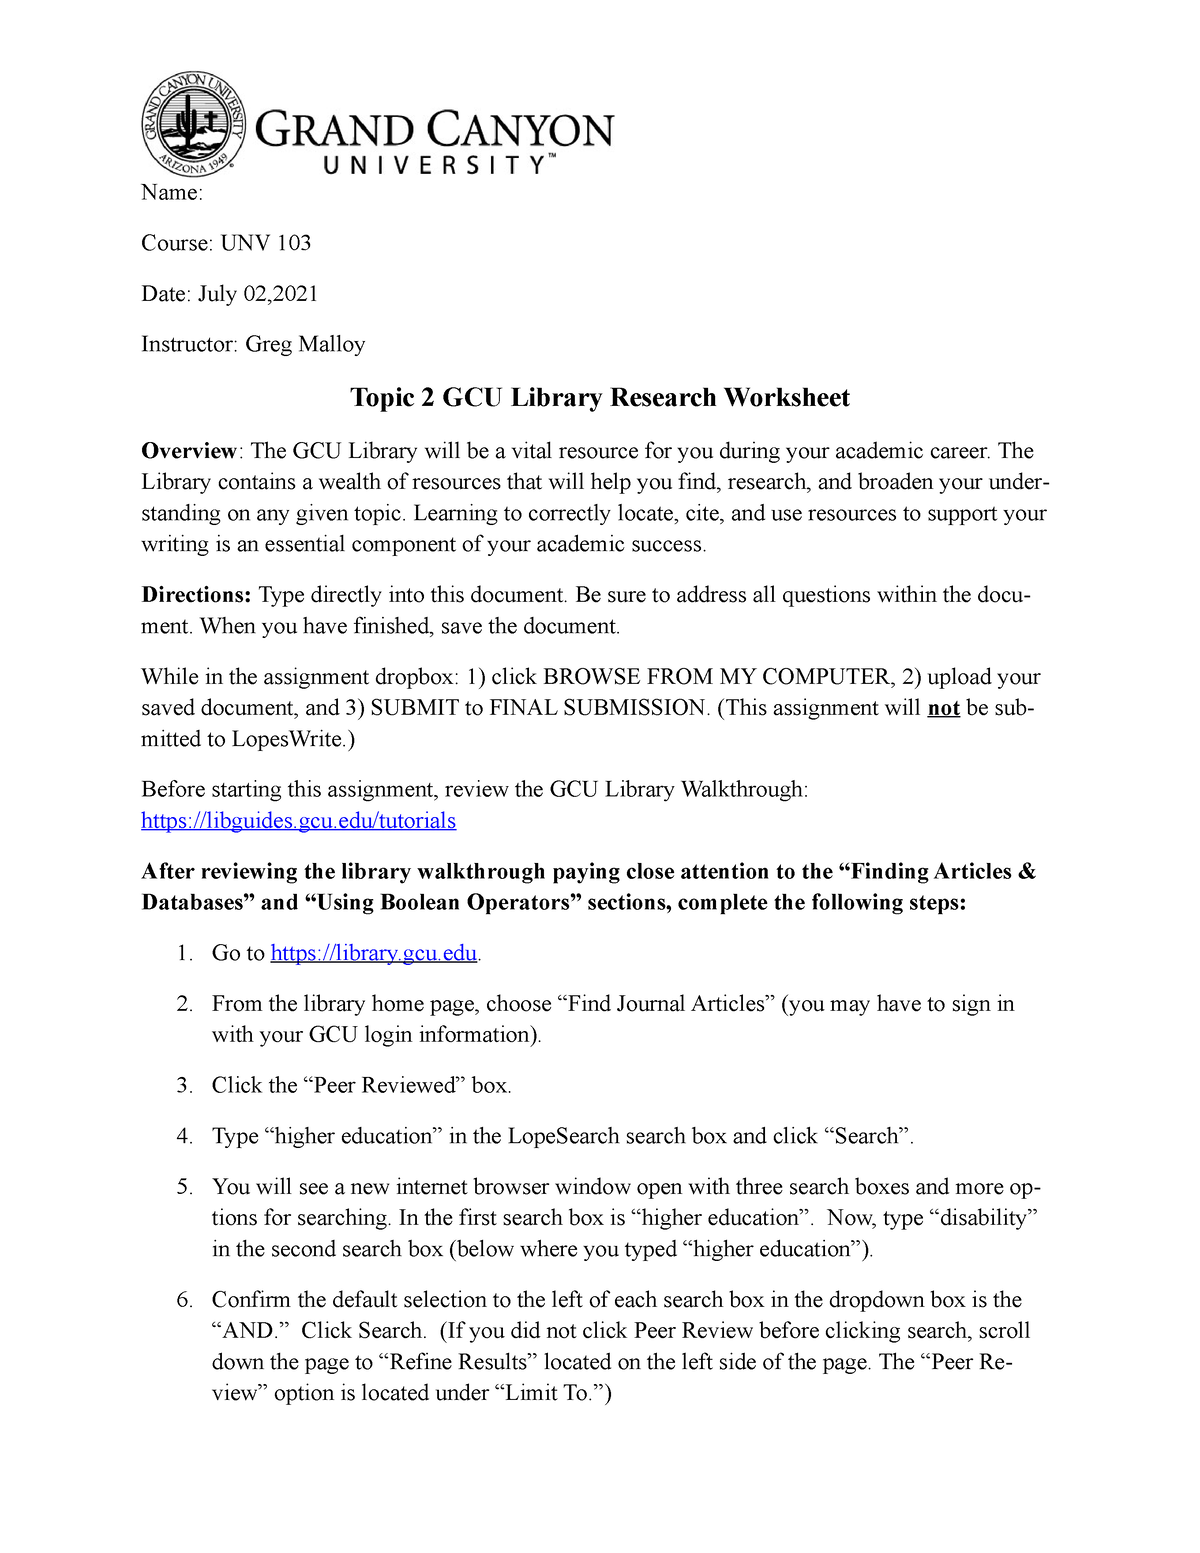 Topic 2 GCU Library Research Worksheet UNV 103 GCU Studocu